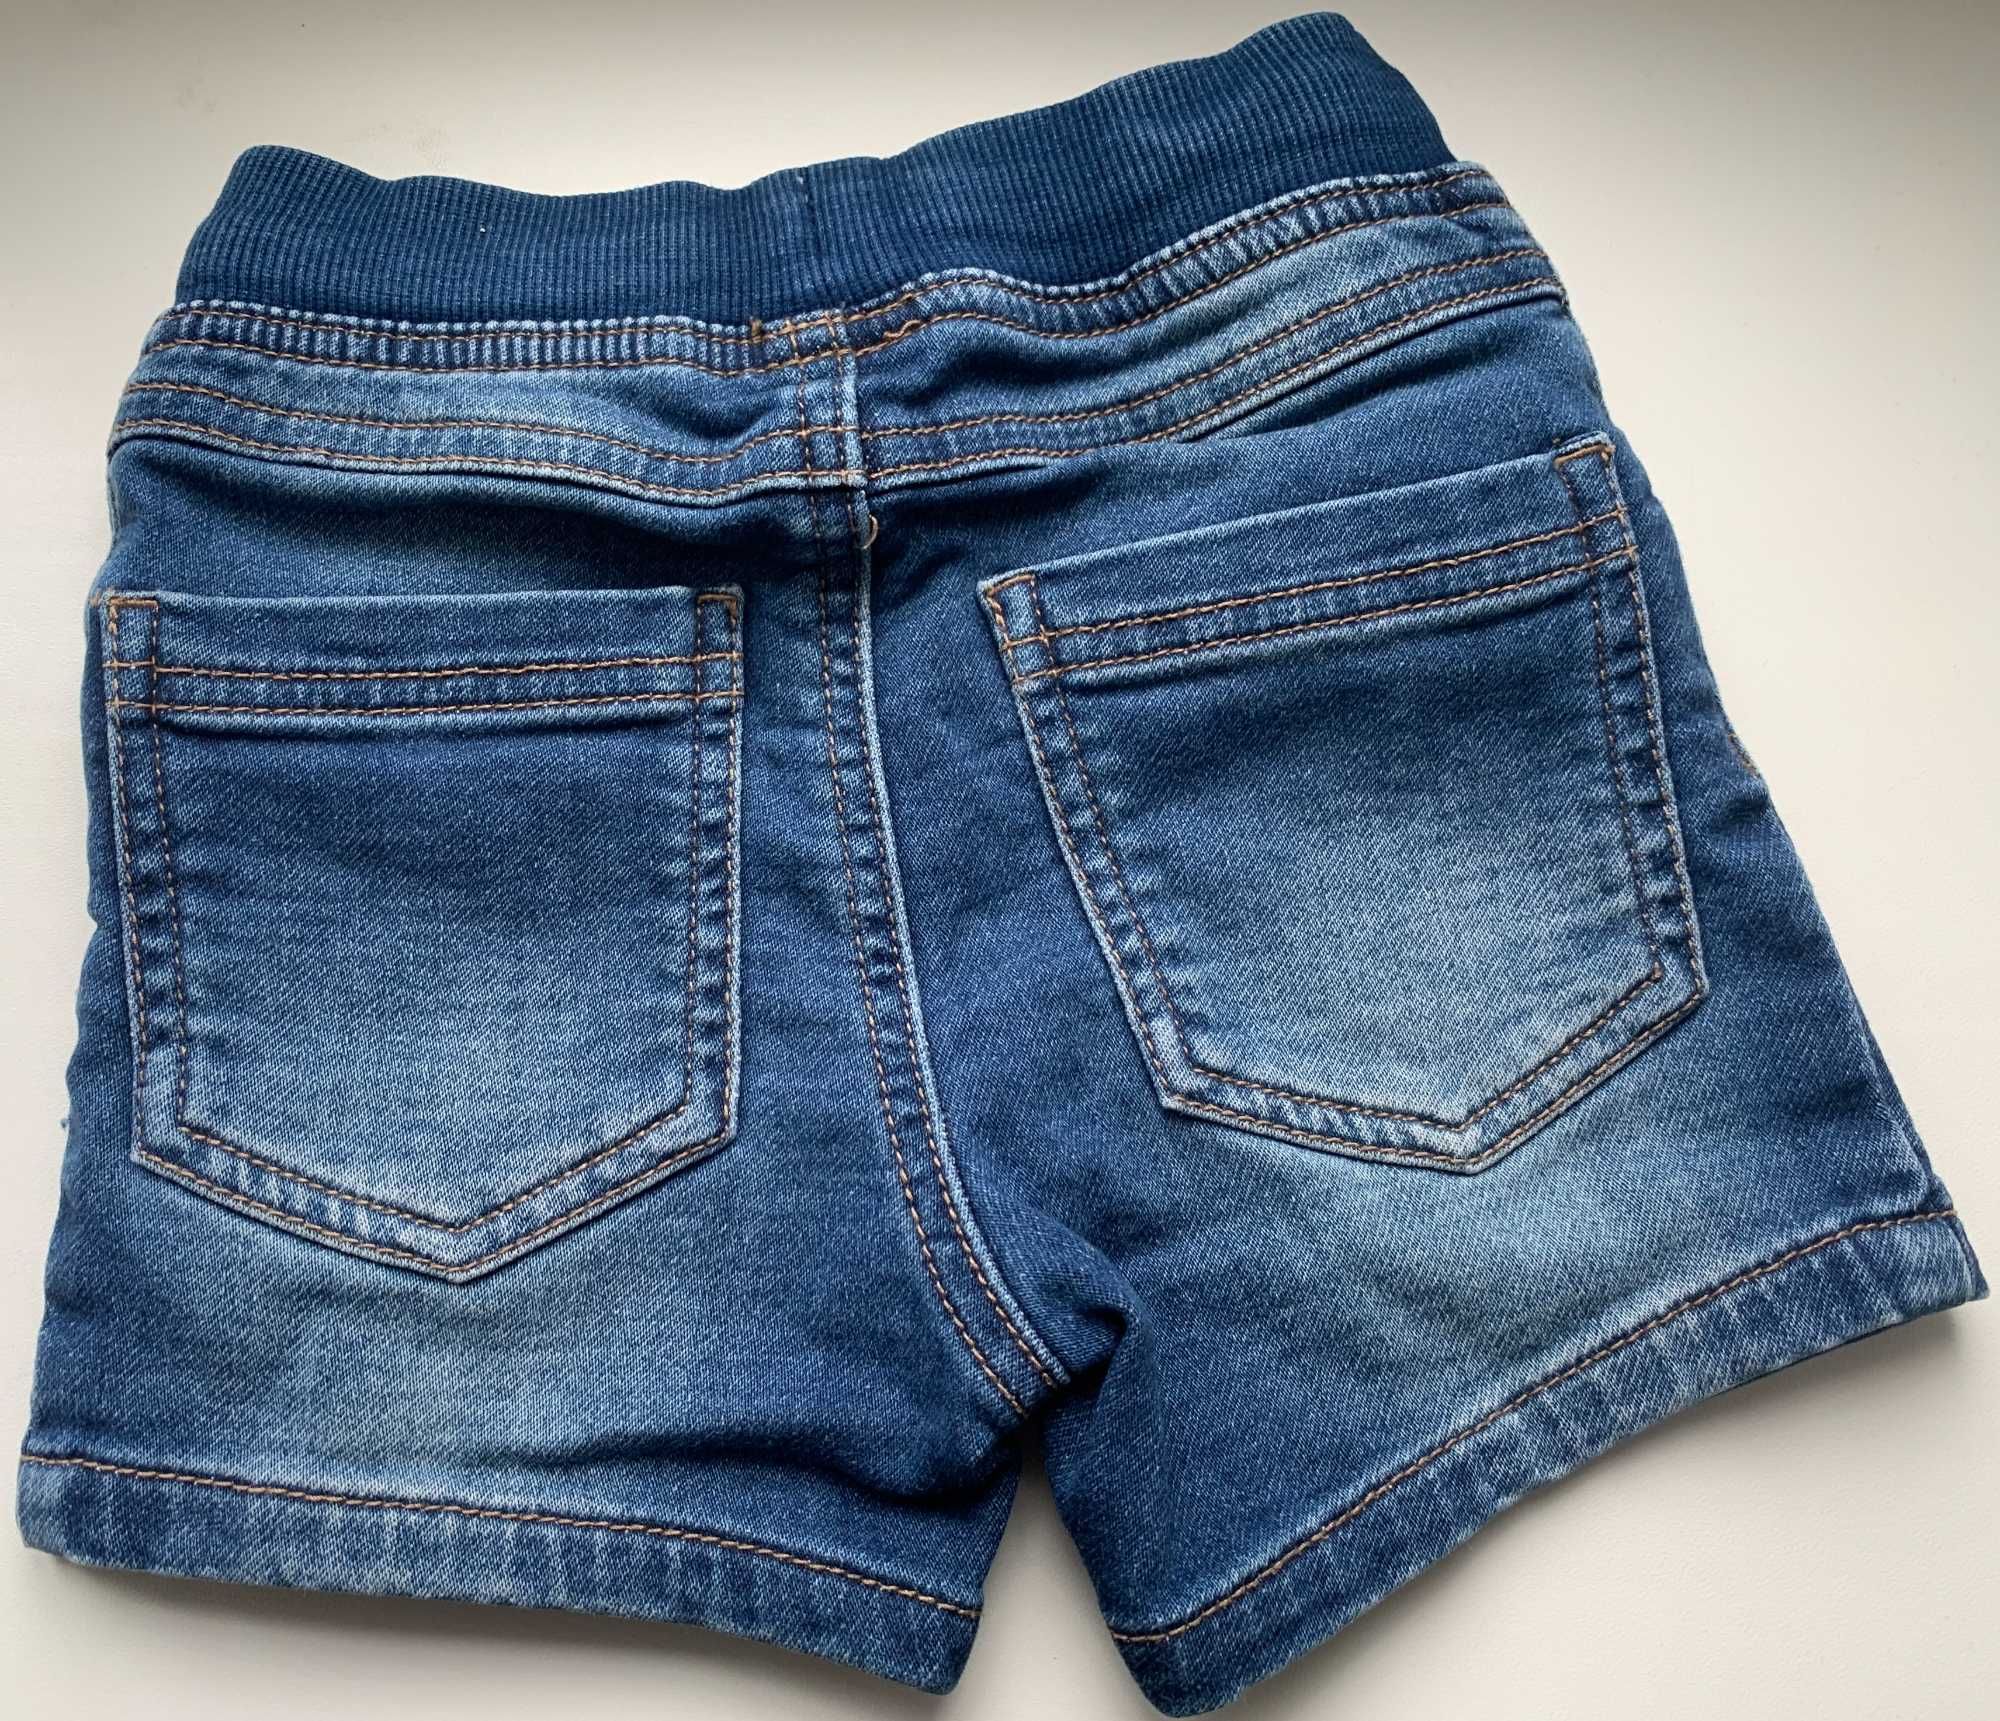 Дитячі шорти джинсові 18-23 місяці Matalan Boys Knitted Denim Shorts